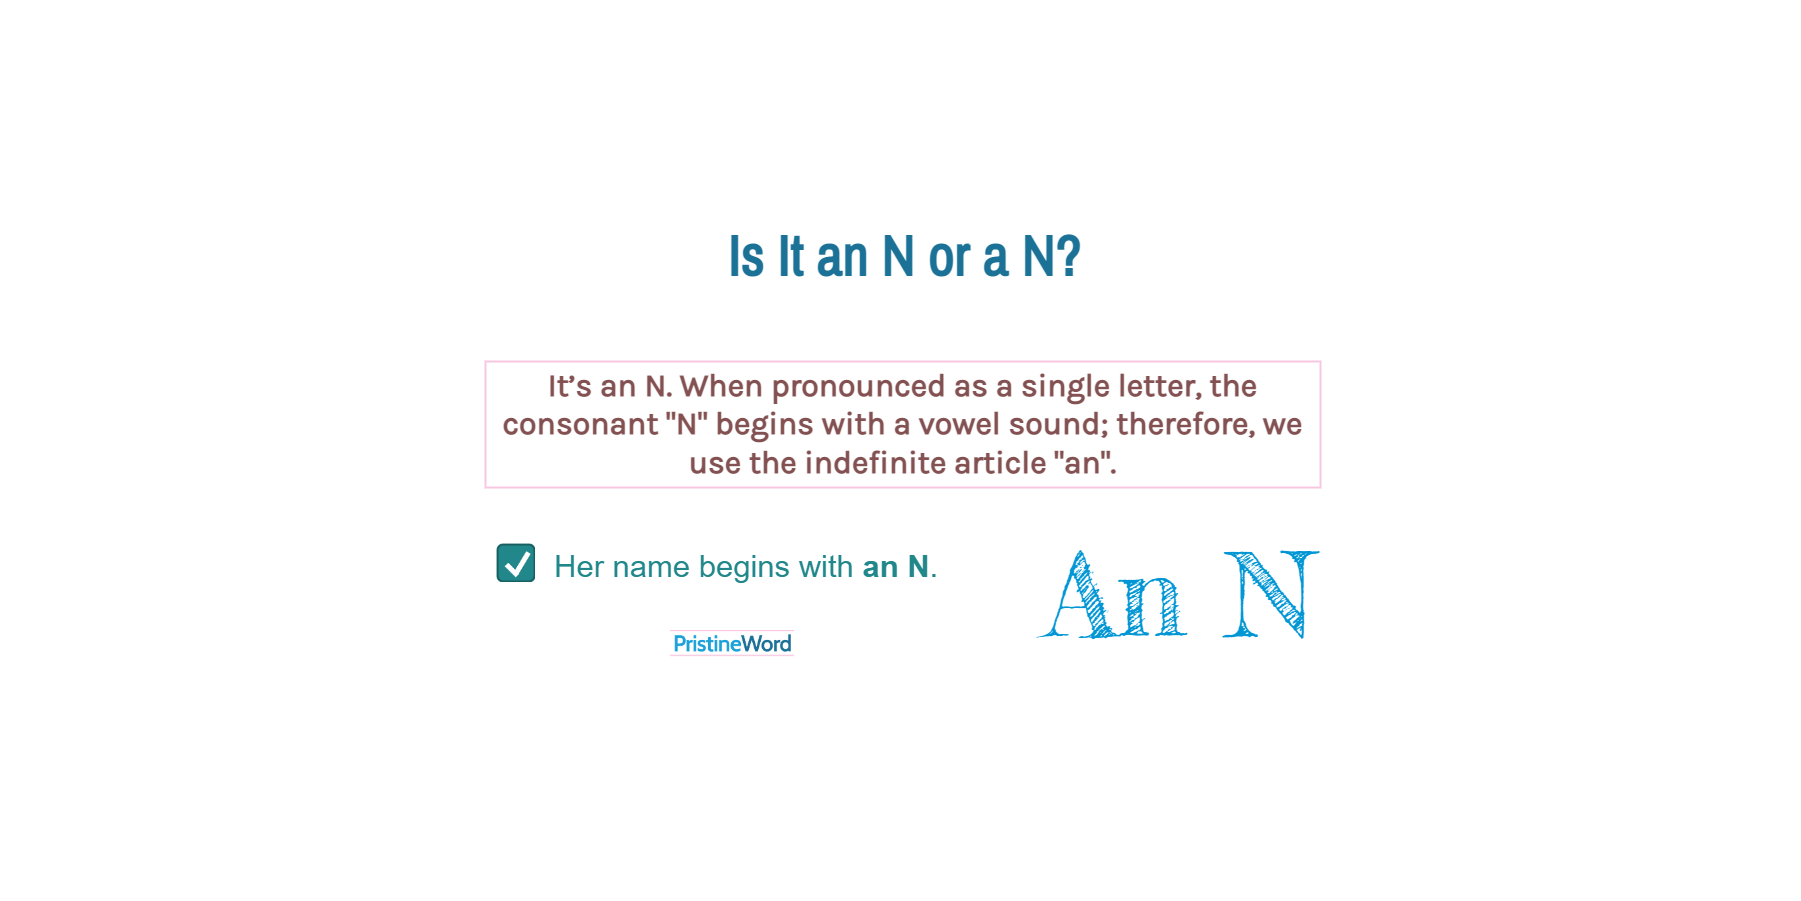 Is It an N or a N?